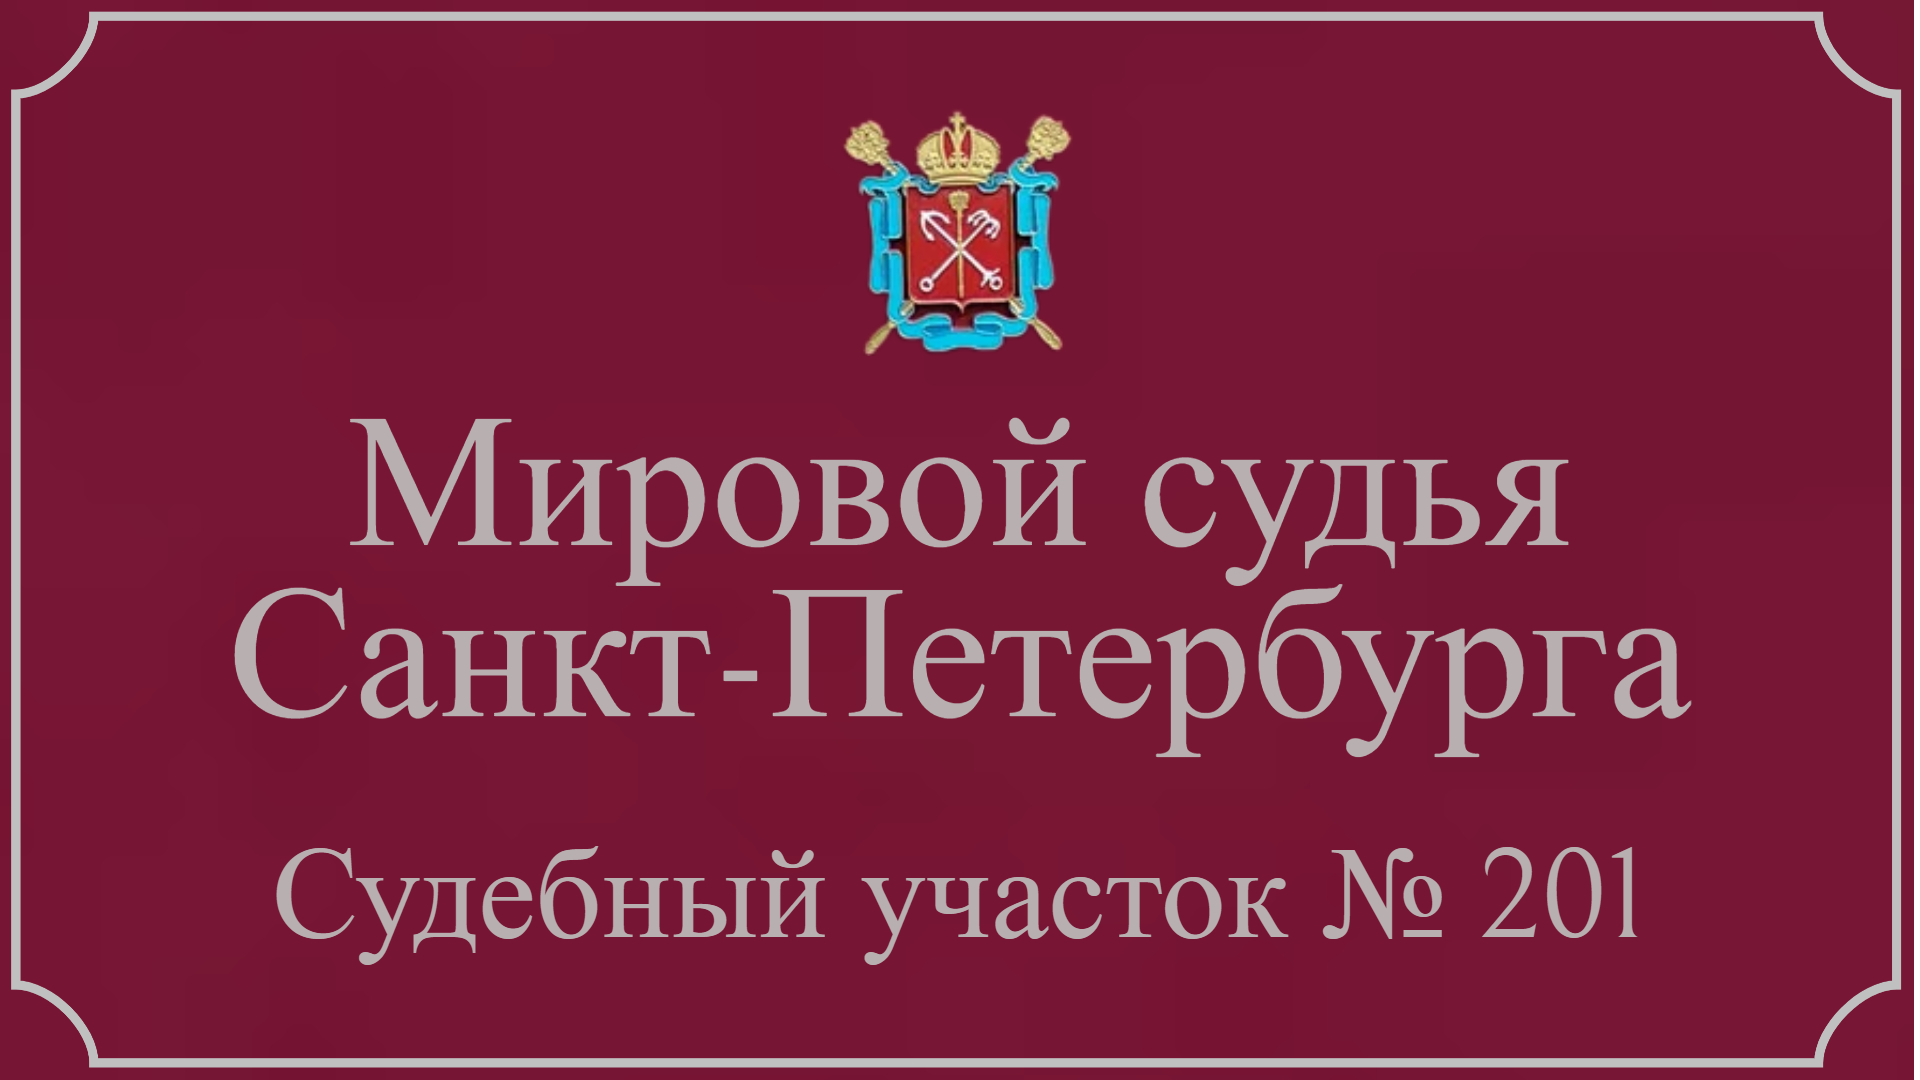 Информация по 201 судебному участку в Санкт-Петербурге.